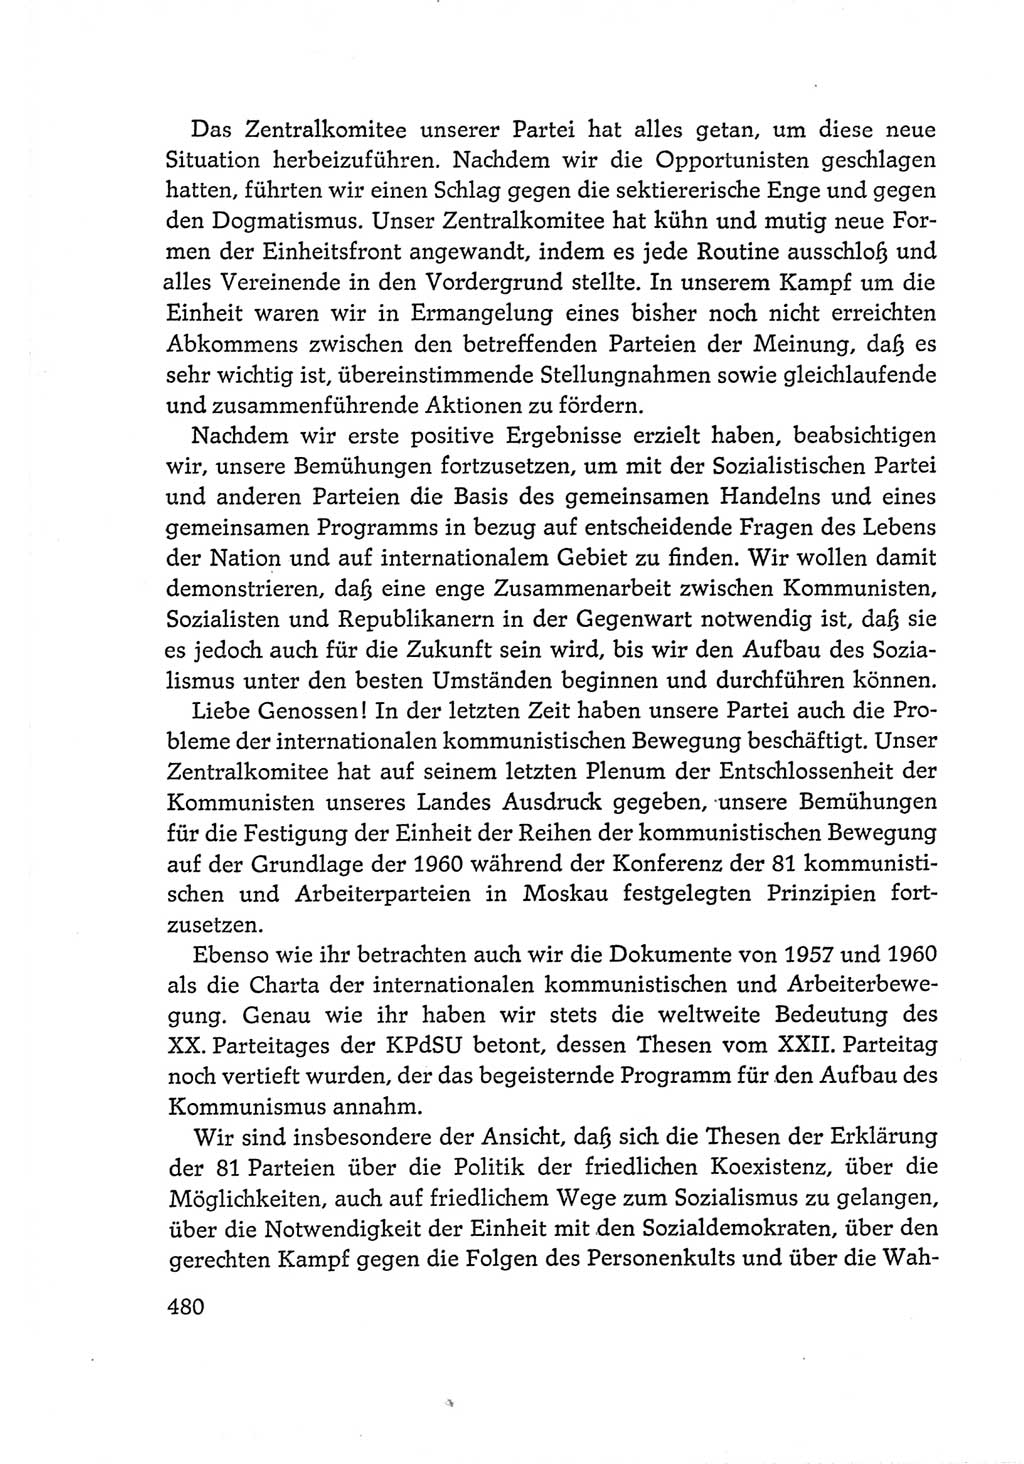 Protokoll der Verhandlungen des Ⅵ. Parteitages der Sozialistischen Einheitspartei Deutschlands (SED) [Deutsche Demokratische Republik (DDR)] 1963, Band Ⅰ, Seite 480 (Prot. Verh. Ⅵ. PT SED DDR 1963, Bd. Ⅰ, S. 480)